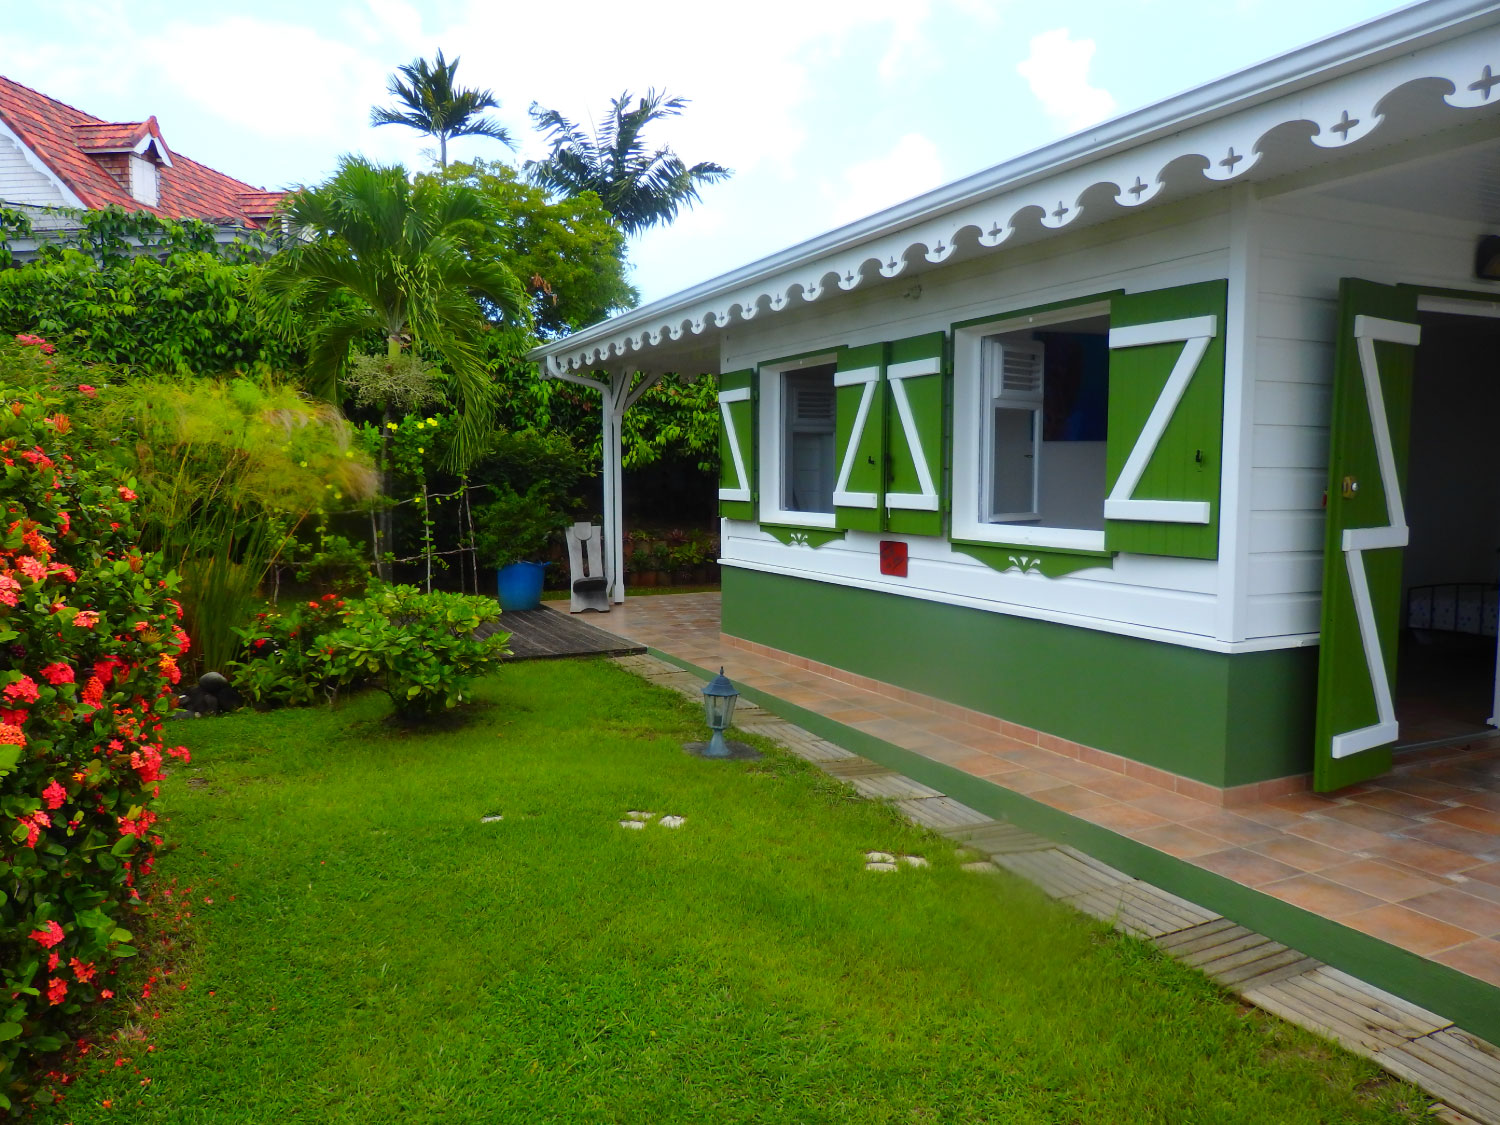 Location studio vacances Martinique - VANILLE DES ISLES